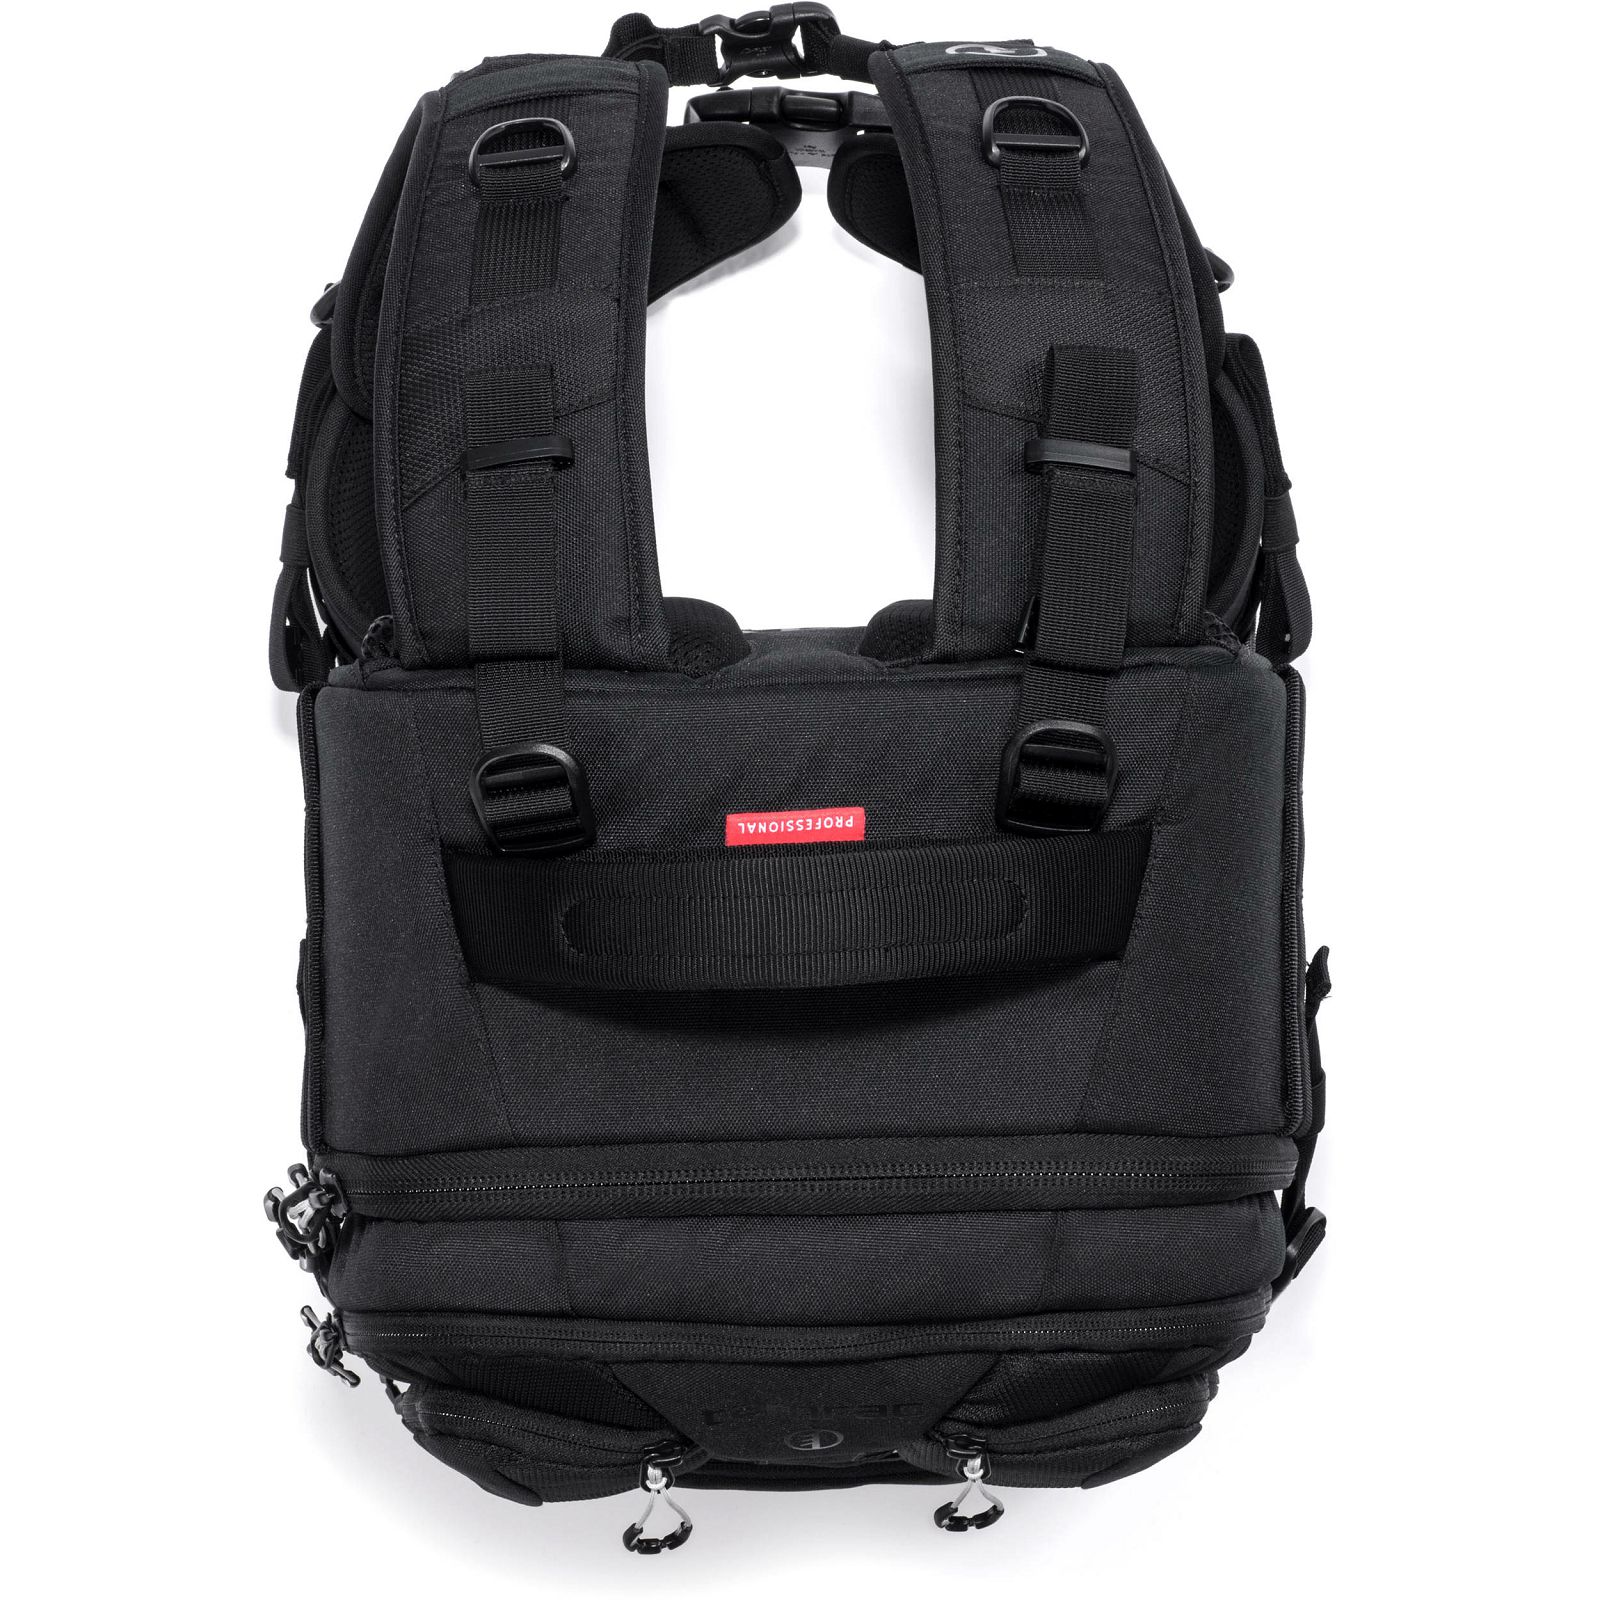 Tamrac Anvil 17 Backpack Black crni ruksak za foto opremu (T0220-1919)